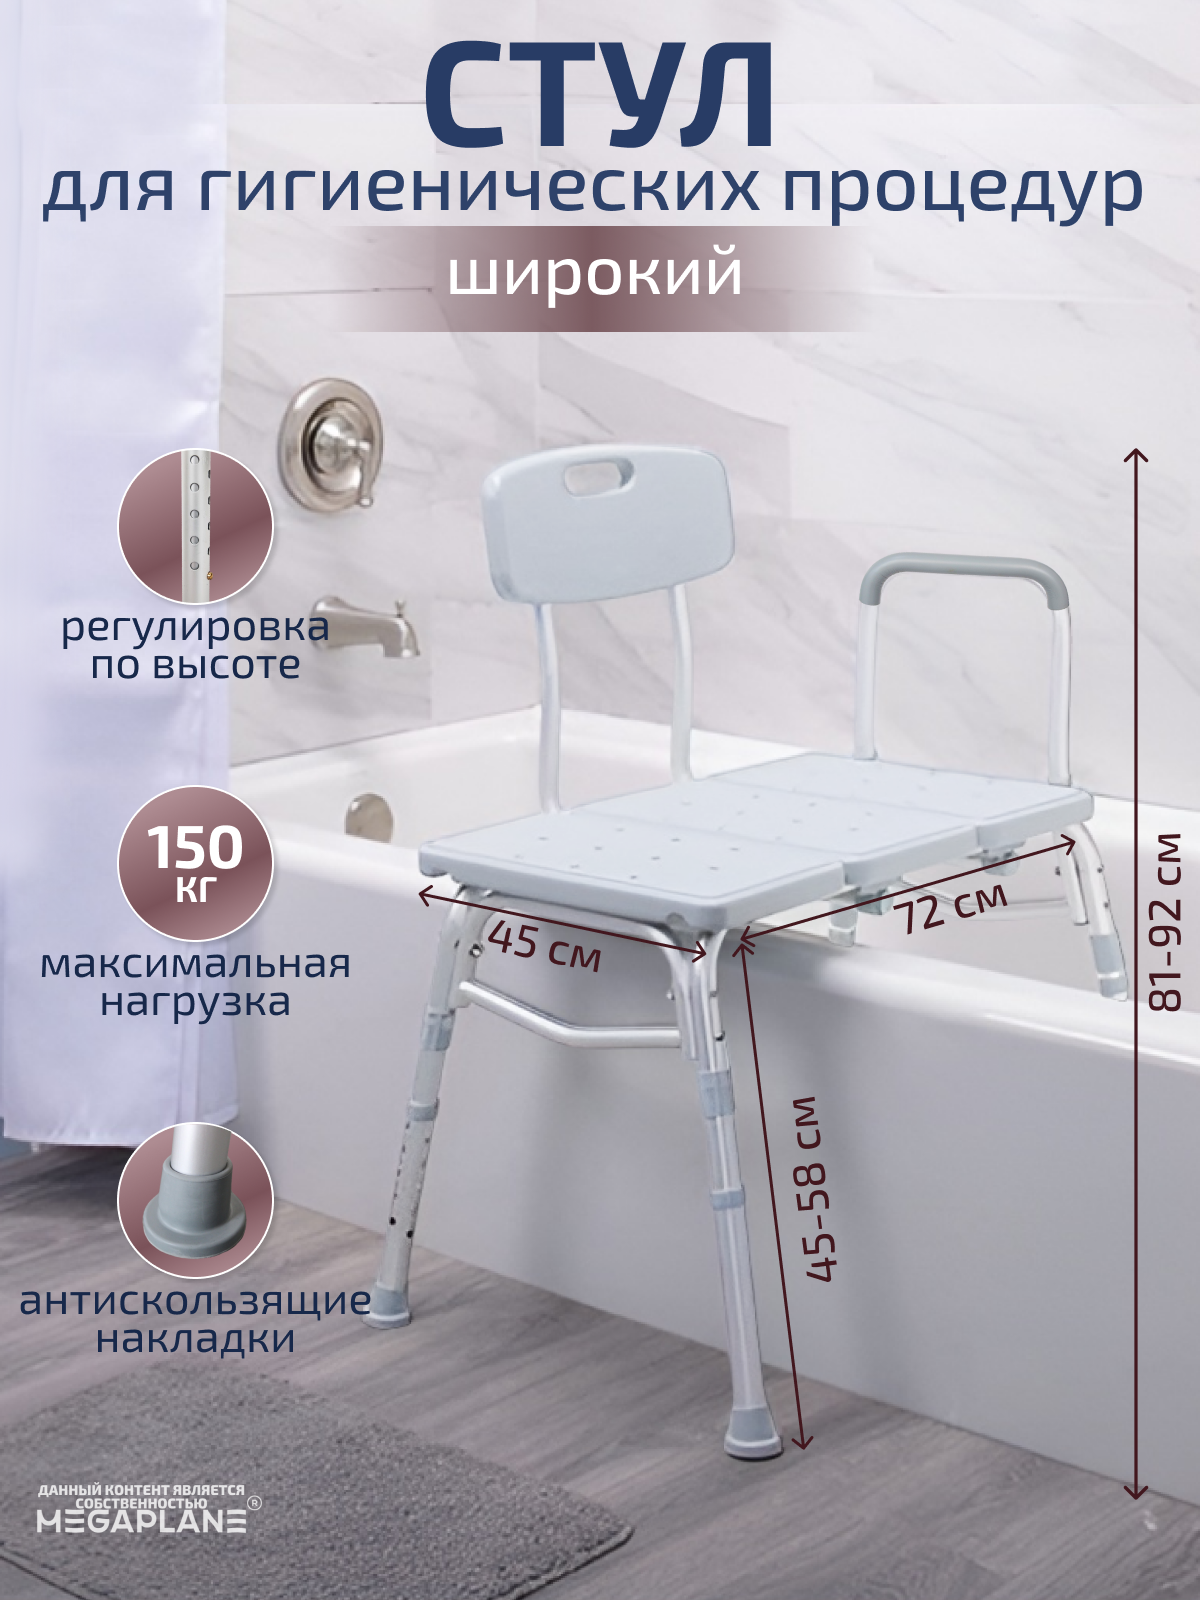 Широкий стул для гигиенических процедур 72x45 см